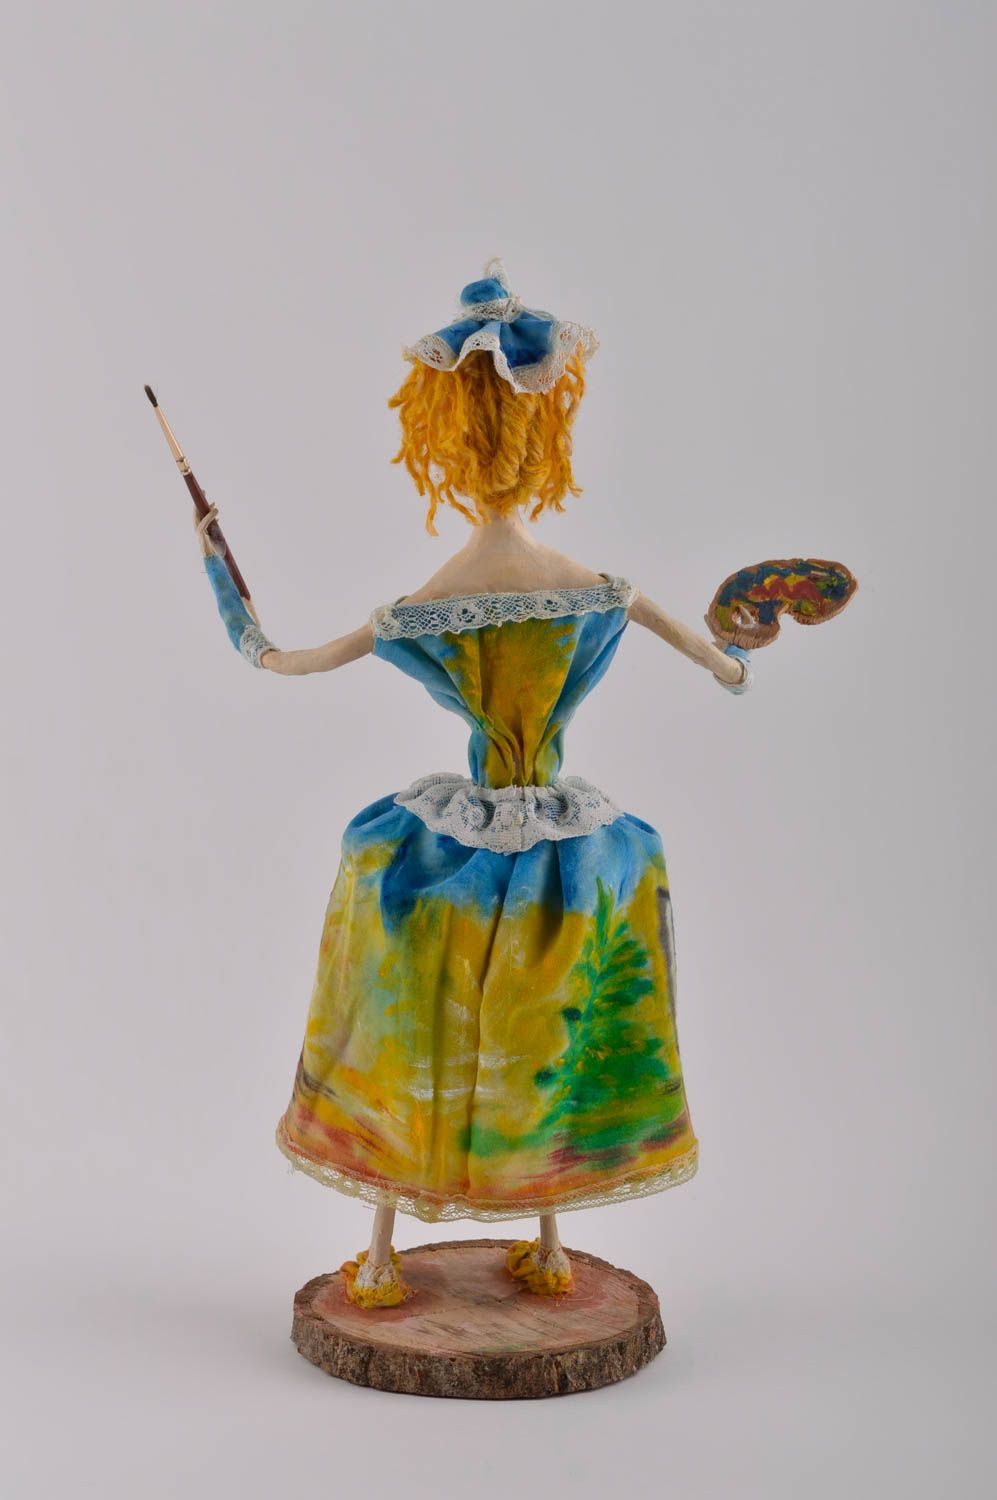 Игрушка ручной работы яркая авторская кукла в виде девушки дизайнерская кукла фото 4